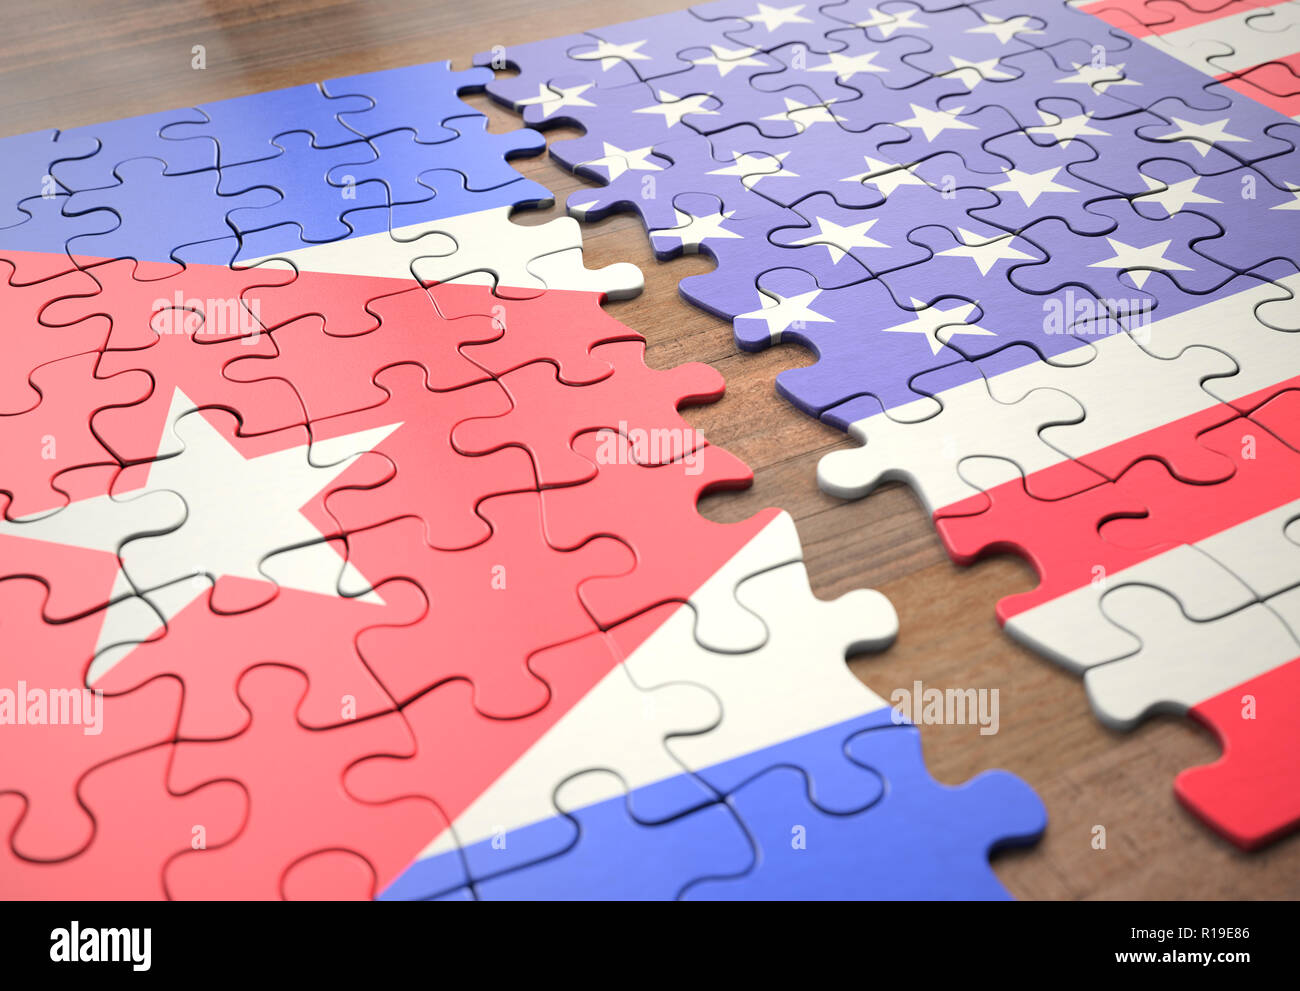 Zwei Nationen in einem Puzzle-spiel, das steht für Union, Frieden, Handel, sozialen und menschlichen Vereinbarung. Stockfoto